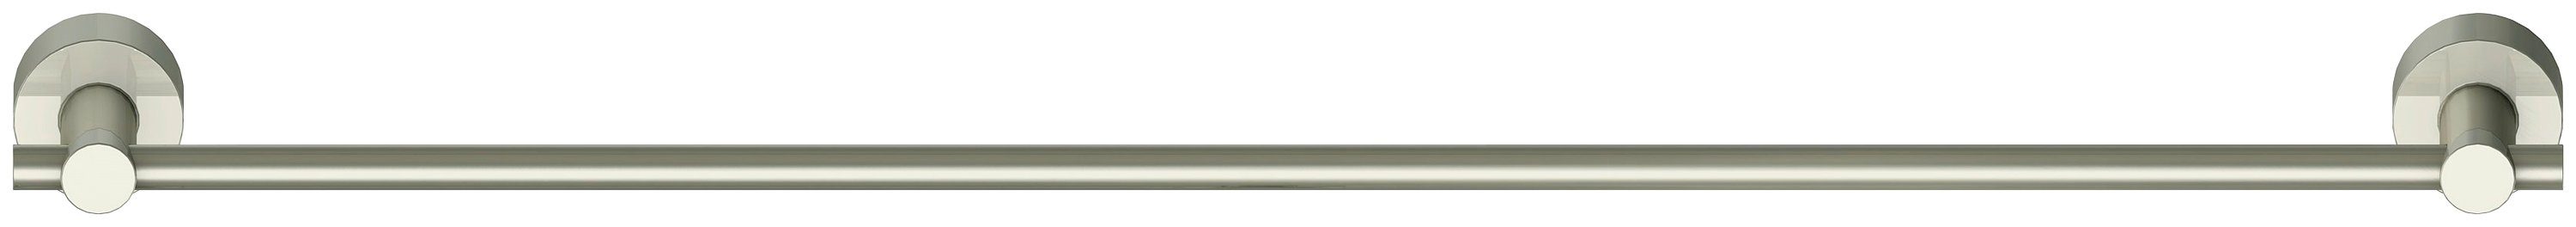 Lenz Handtuchstange SCALA, 62,5 cm Breite